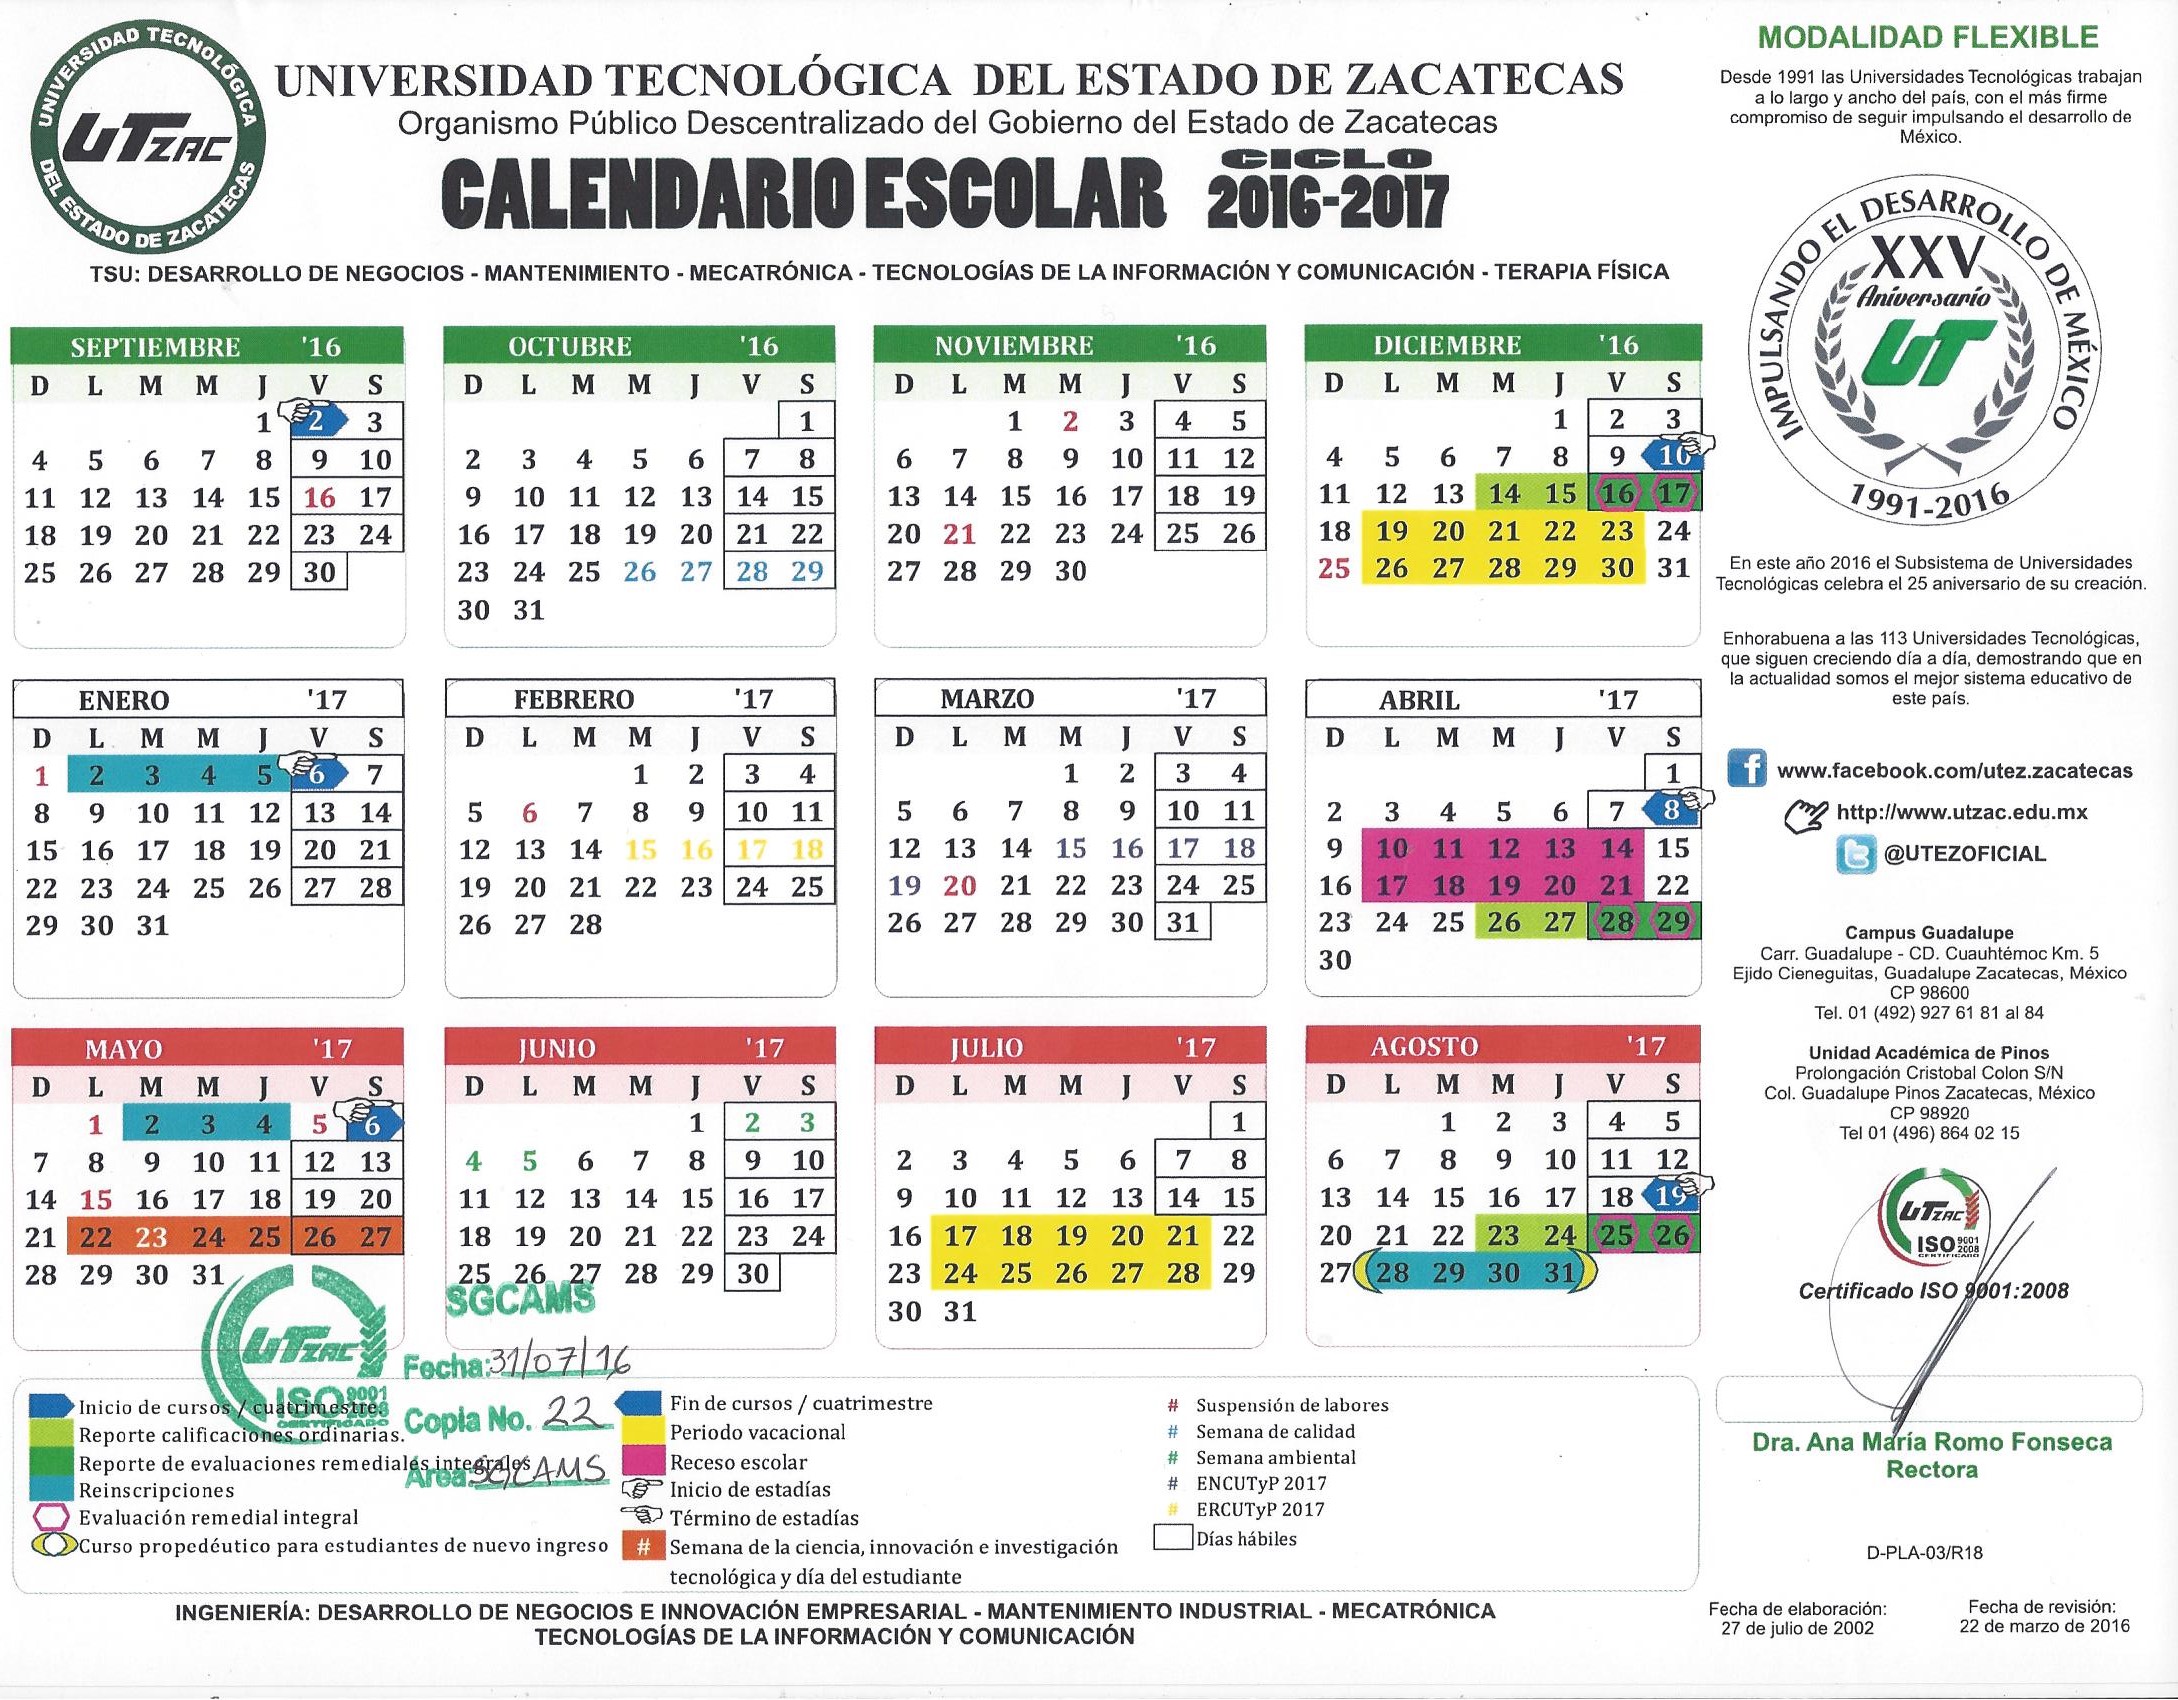 Calendario Oficial del ciclo 2016 – 2017 Mod. Flexible